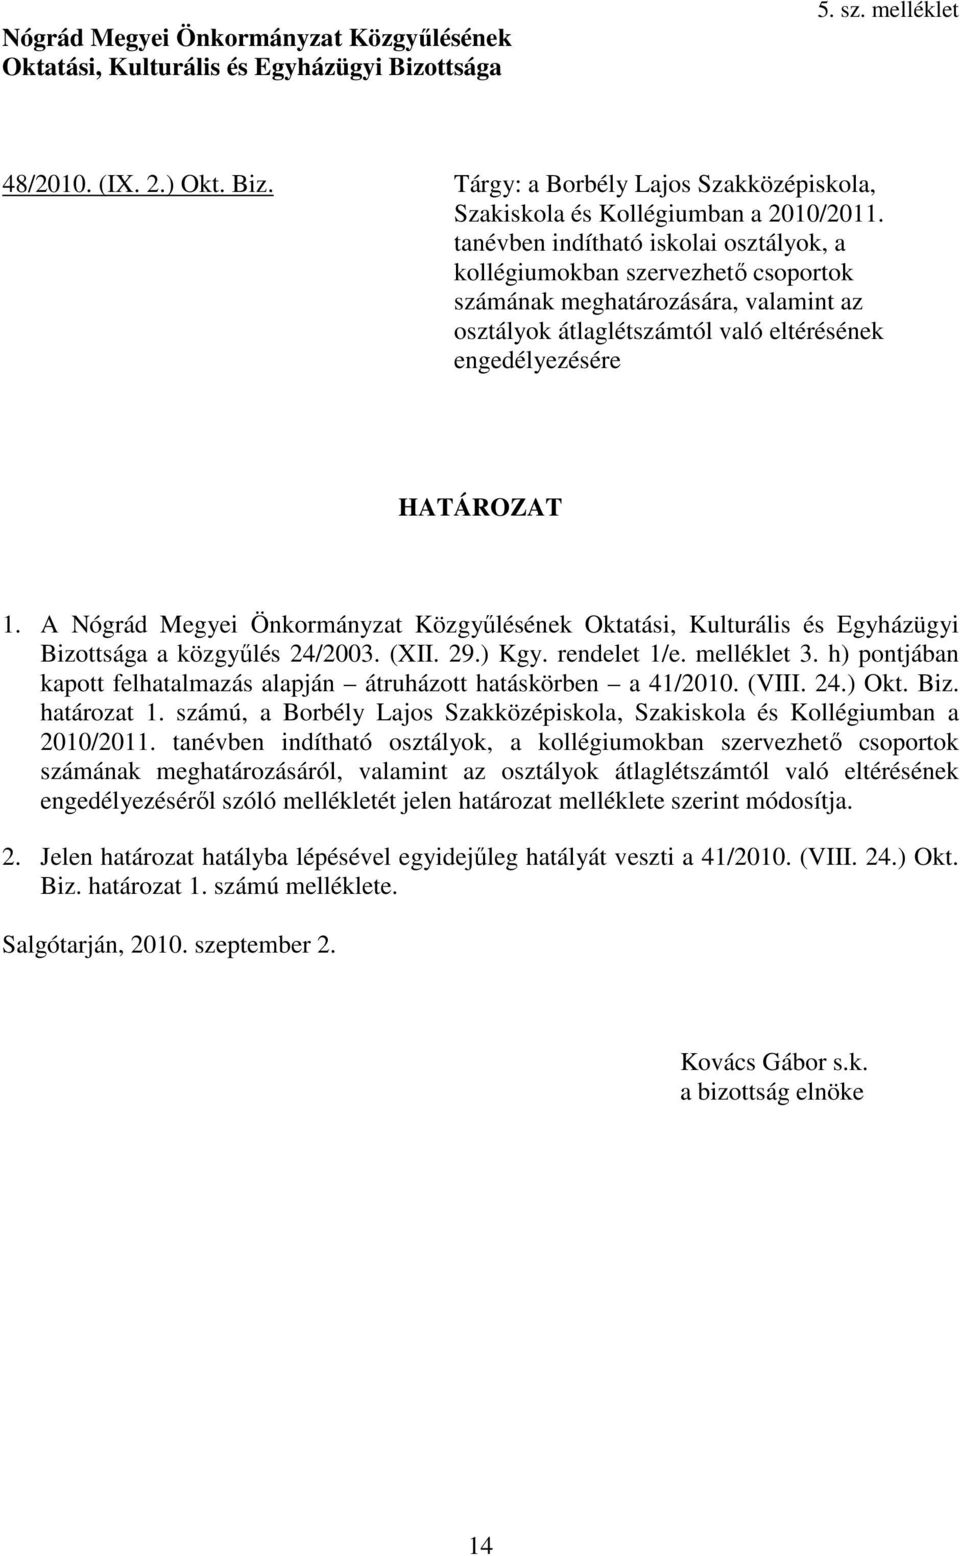 A Nógrád Megyei Önkormányzat Közgyűlésének Oktatási, Kulturális és Egyházügyi Bizottsága a közgyűlés 24/2003. (XII. 29.) Kgy. rendelet 1/e. melléklet 3.